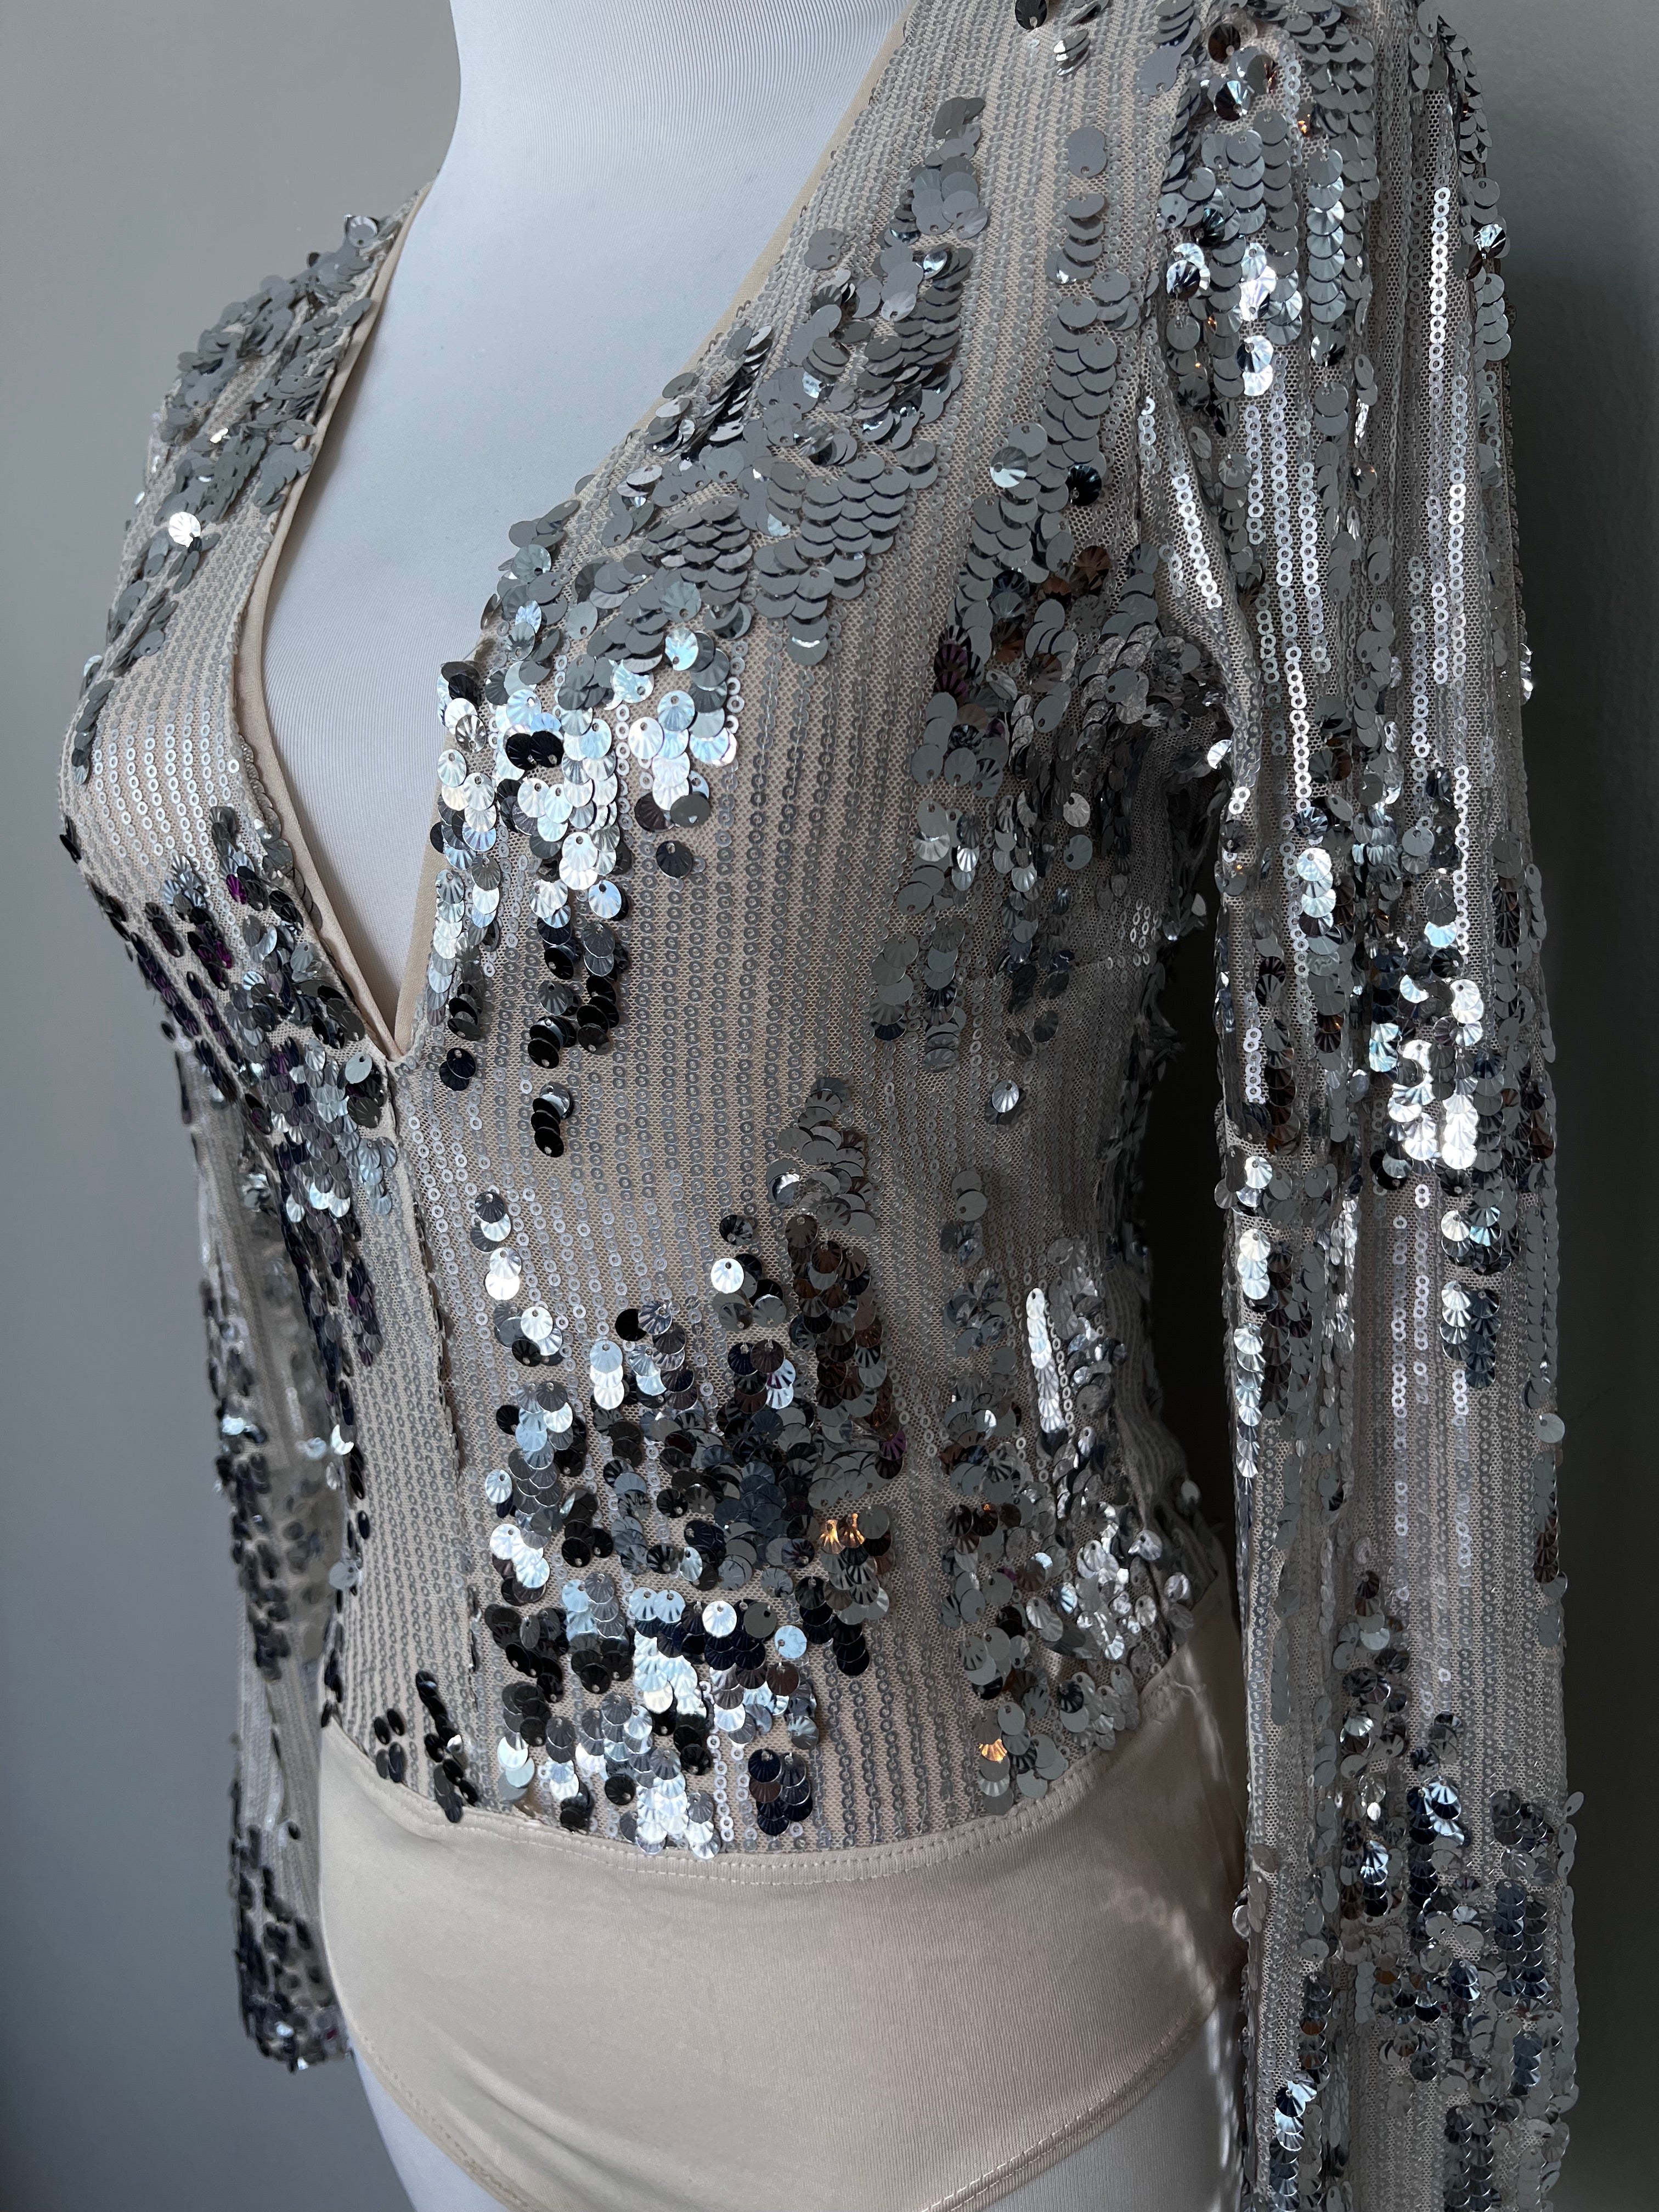 Silver embellished chic bodysuit - ADL